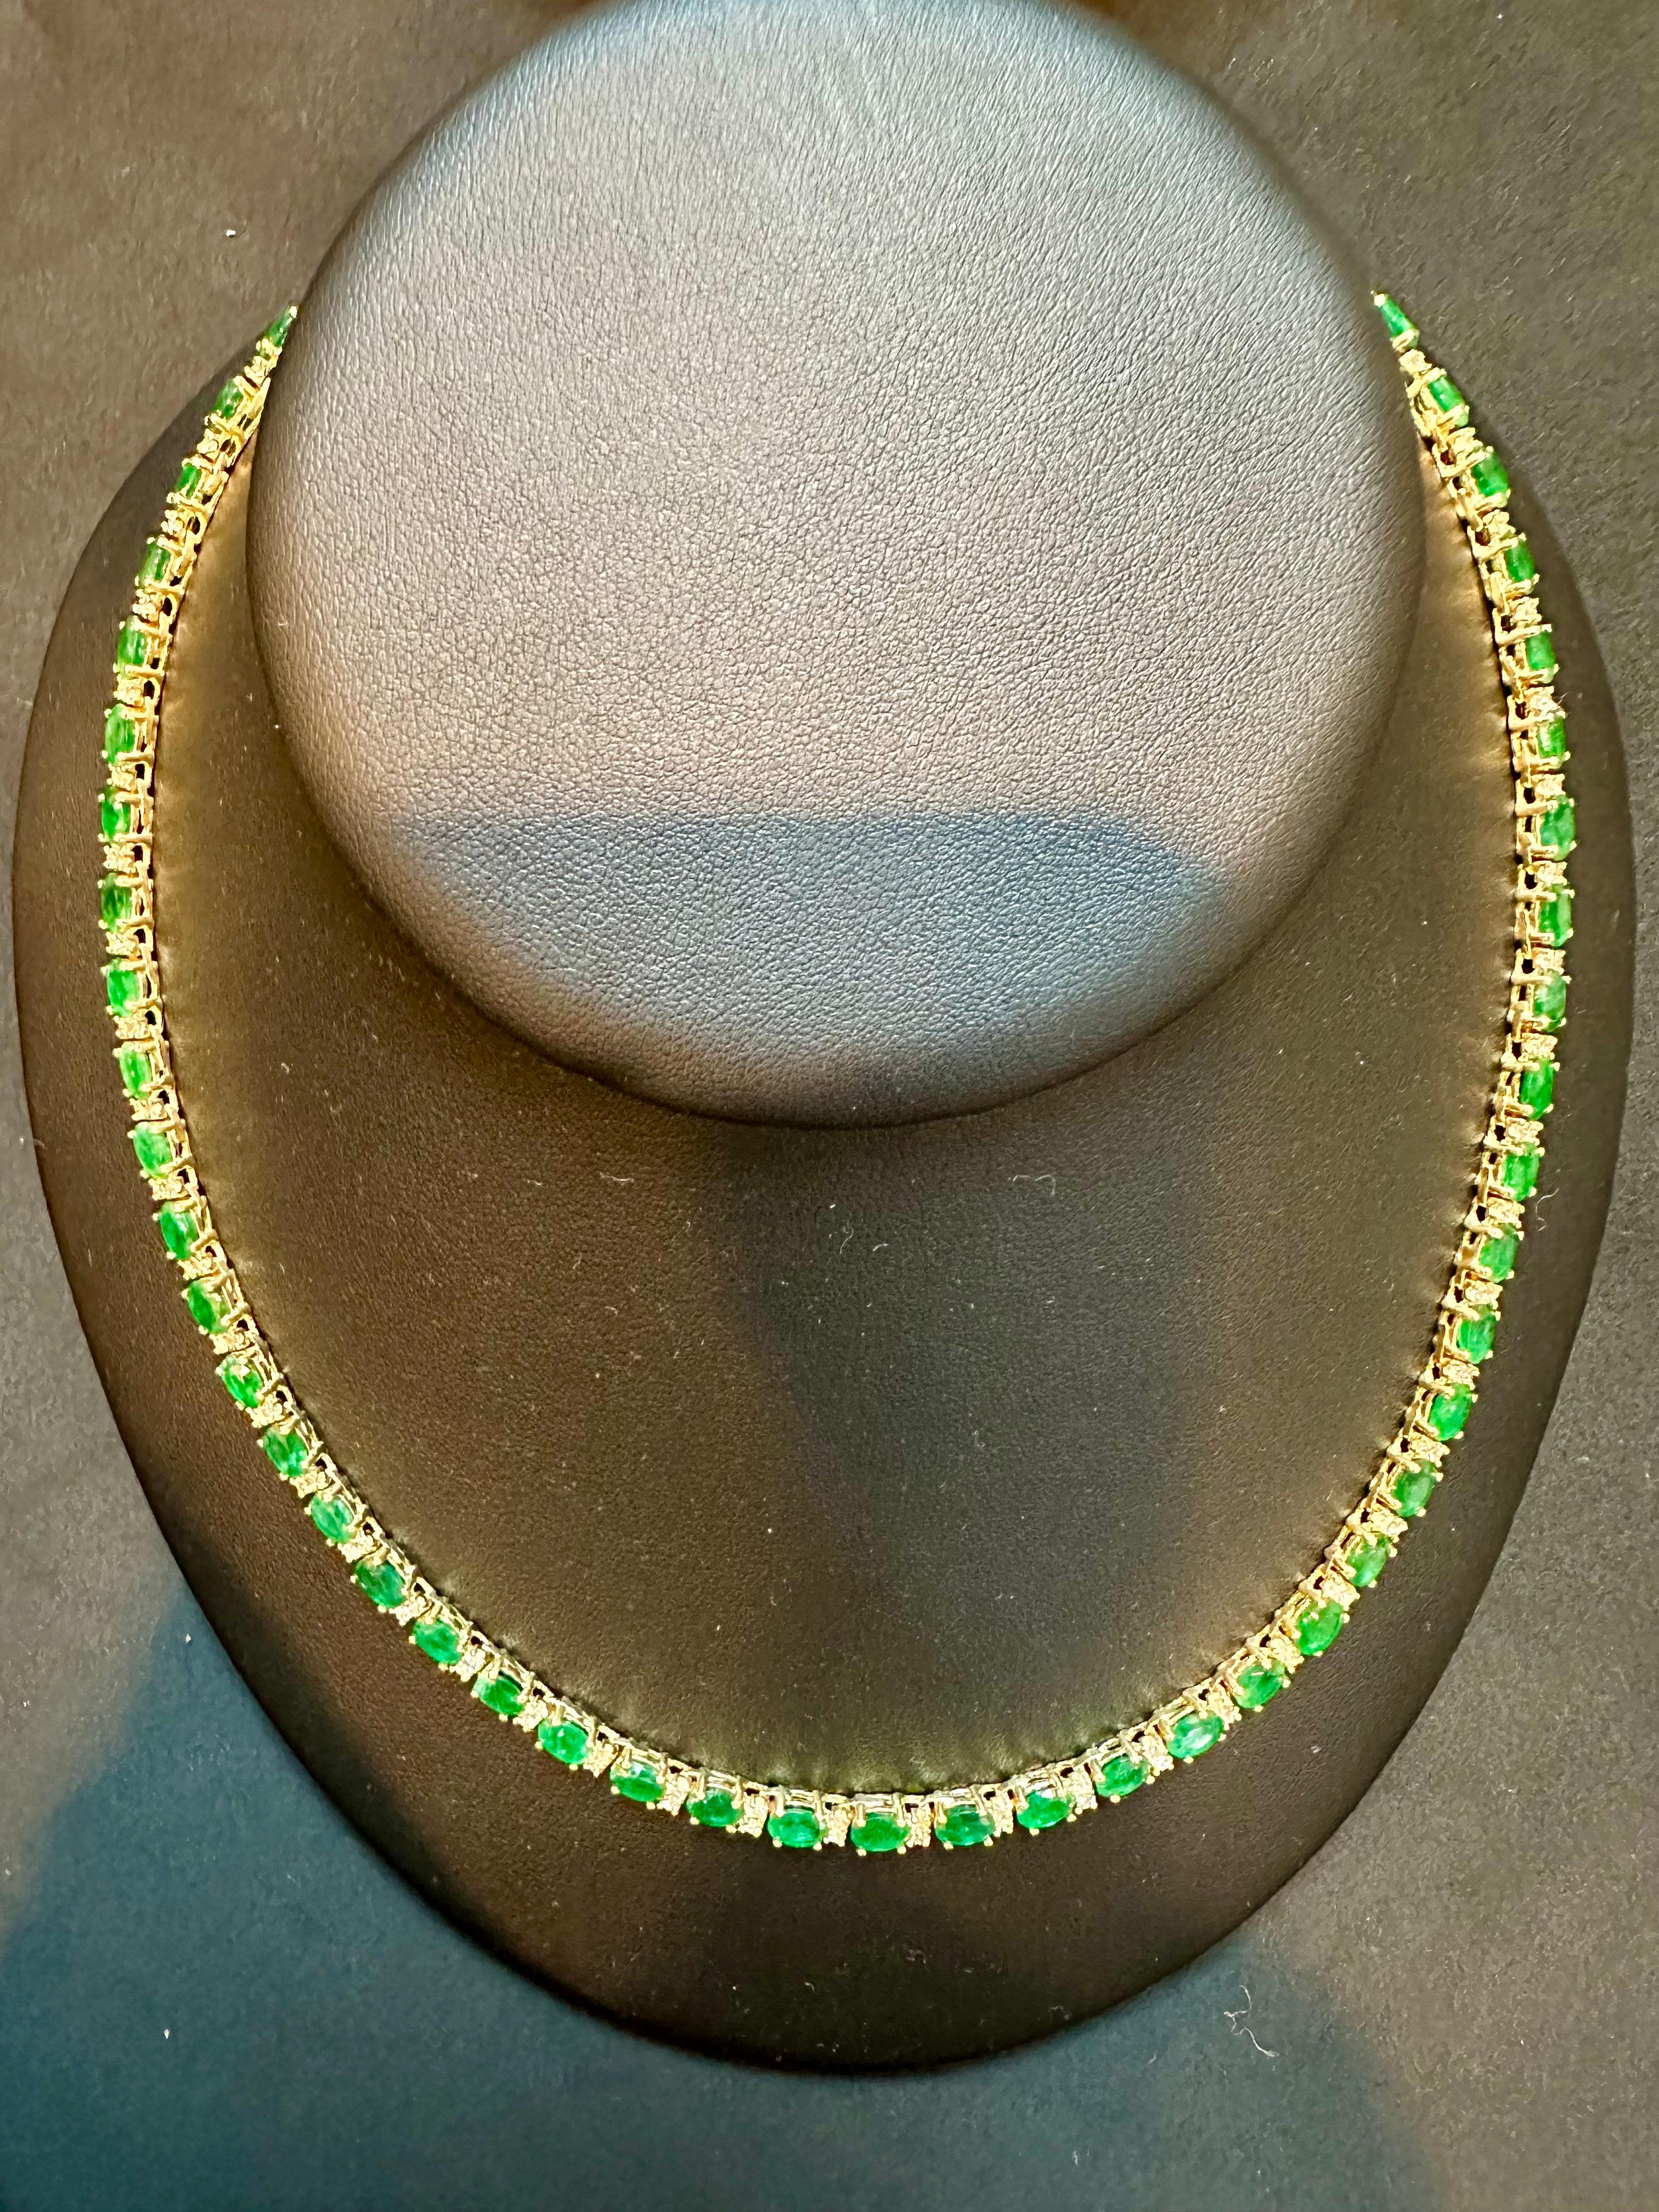 30 Carat Oval Brazilian Emerald & 3 Carat Diamond Tennis Necklace 14 Karat Gold For Sale 6